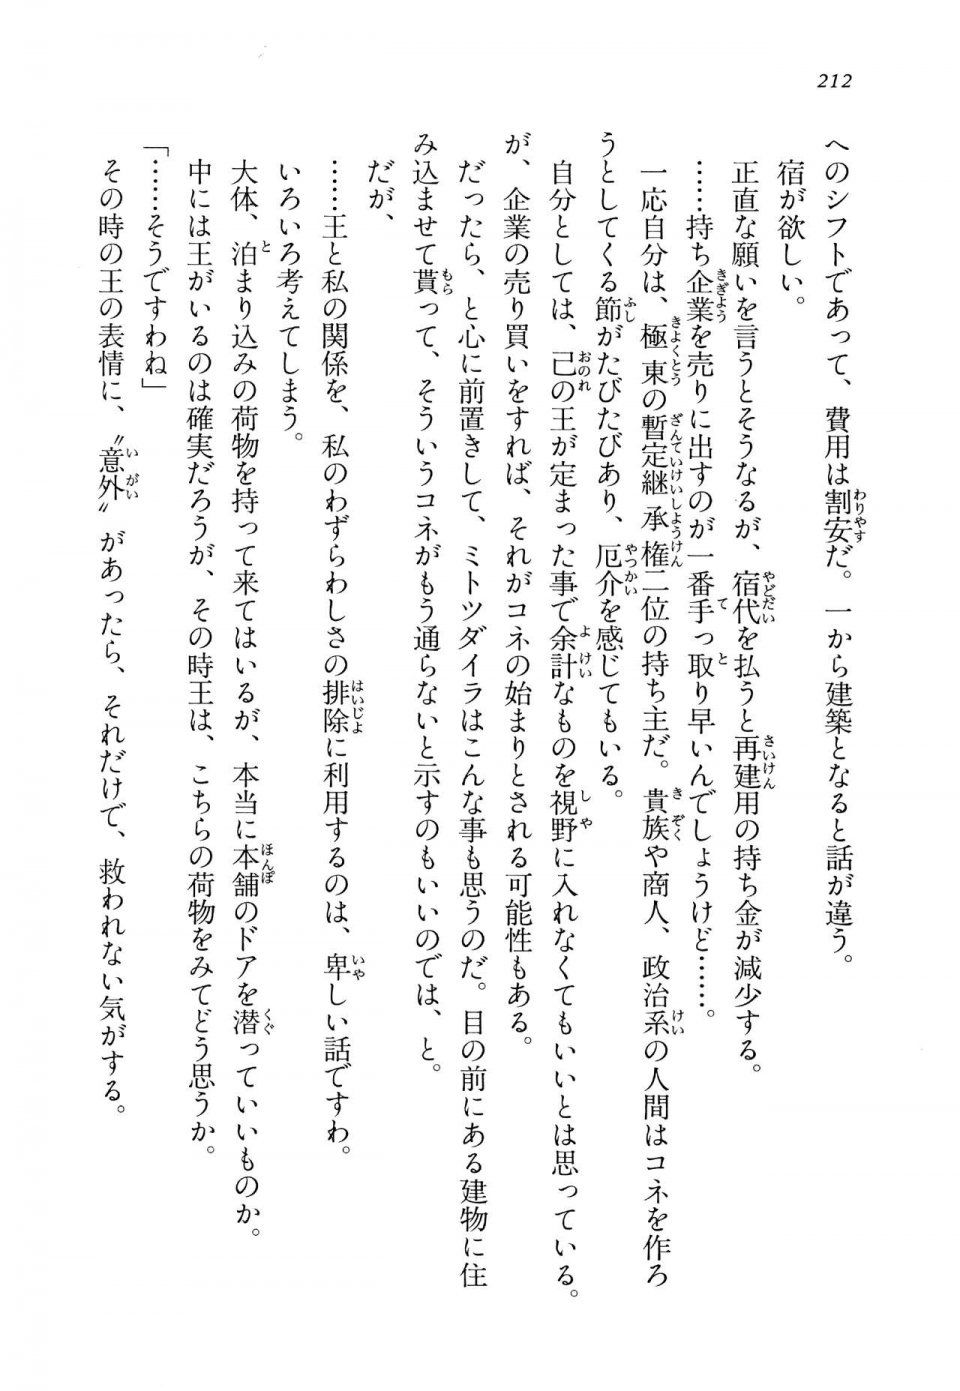 Kyoukai Senjou no Horizon LN Vol 14(6B) - Photo #212